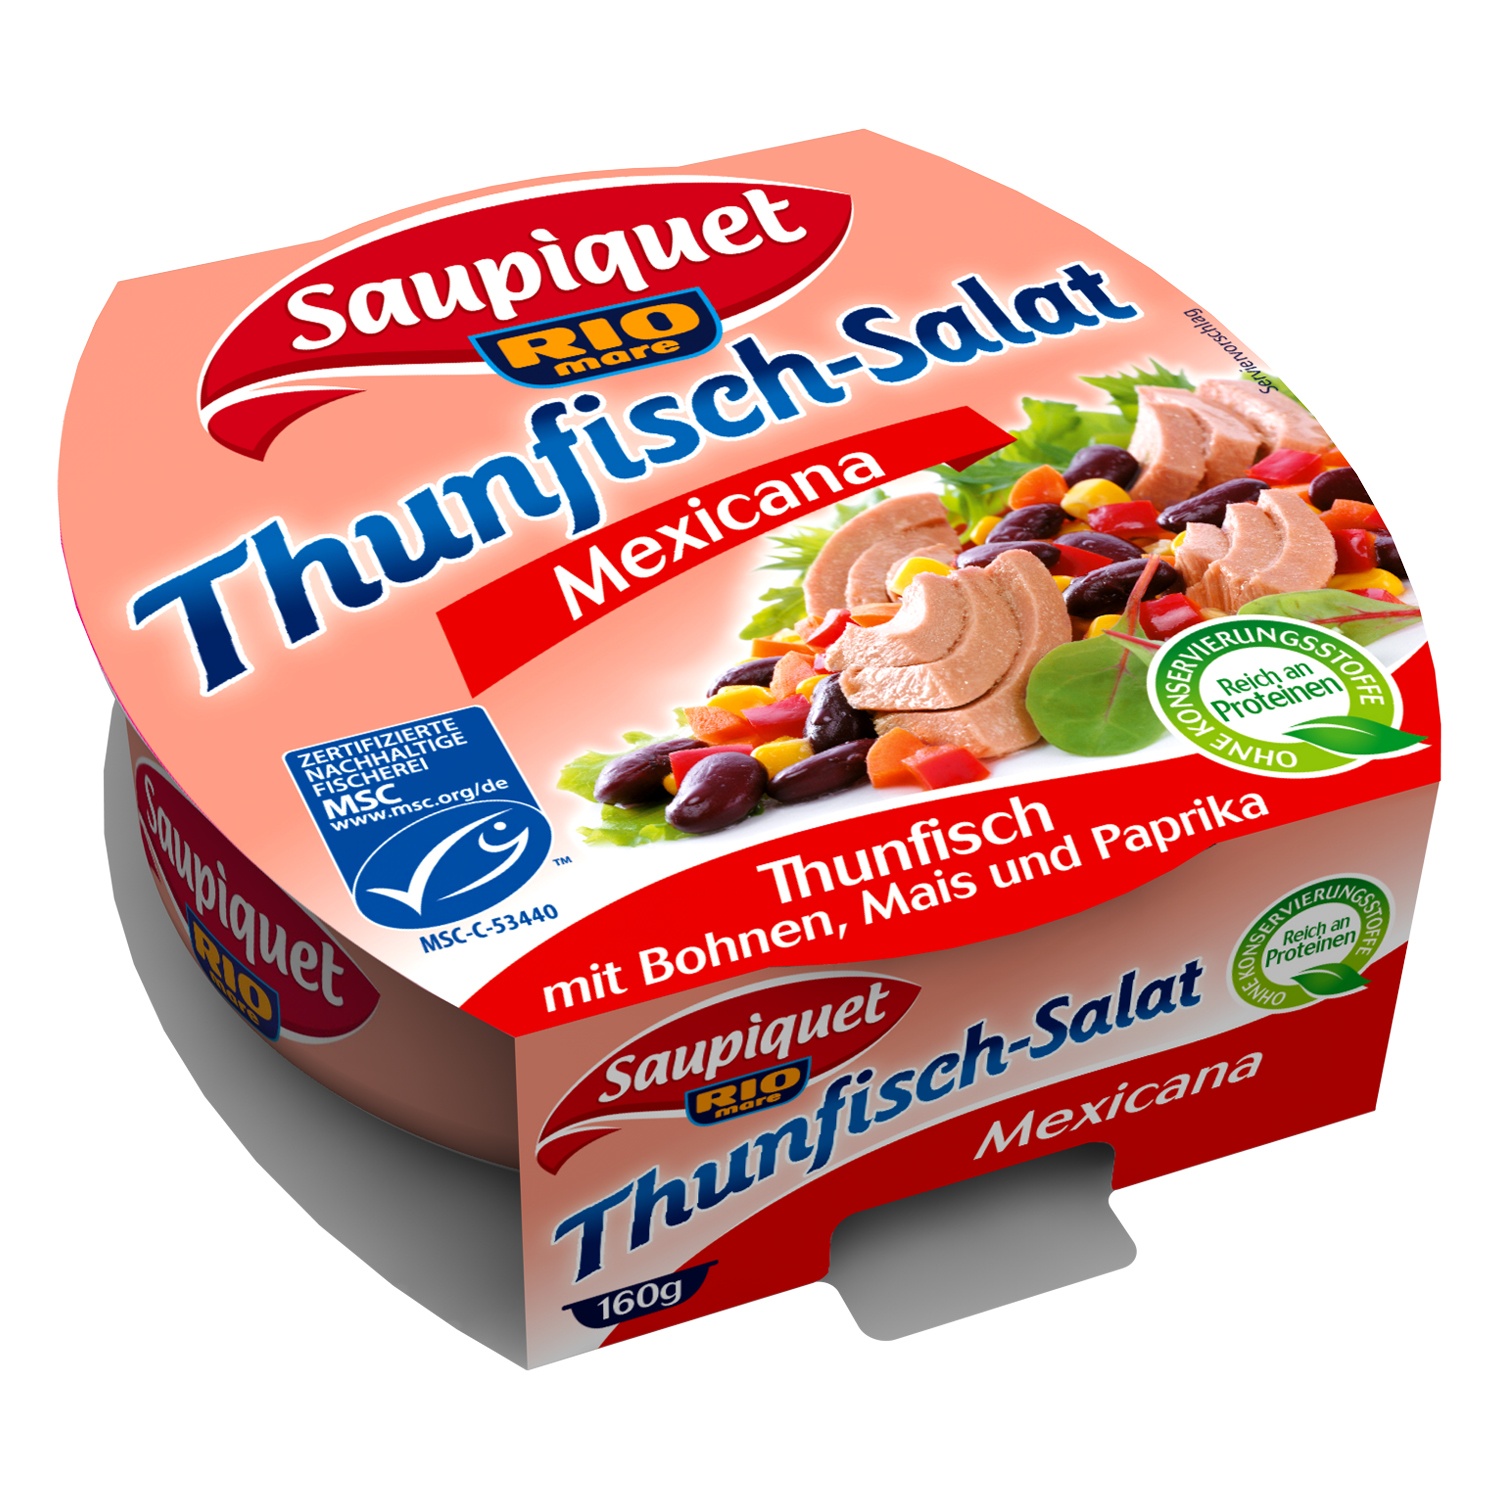 Saupiquet Thunfisch-Salat 160 g